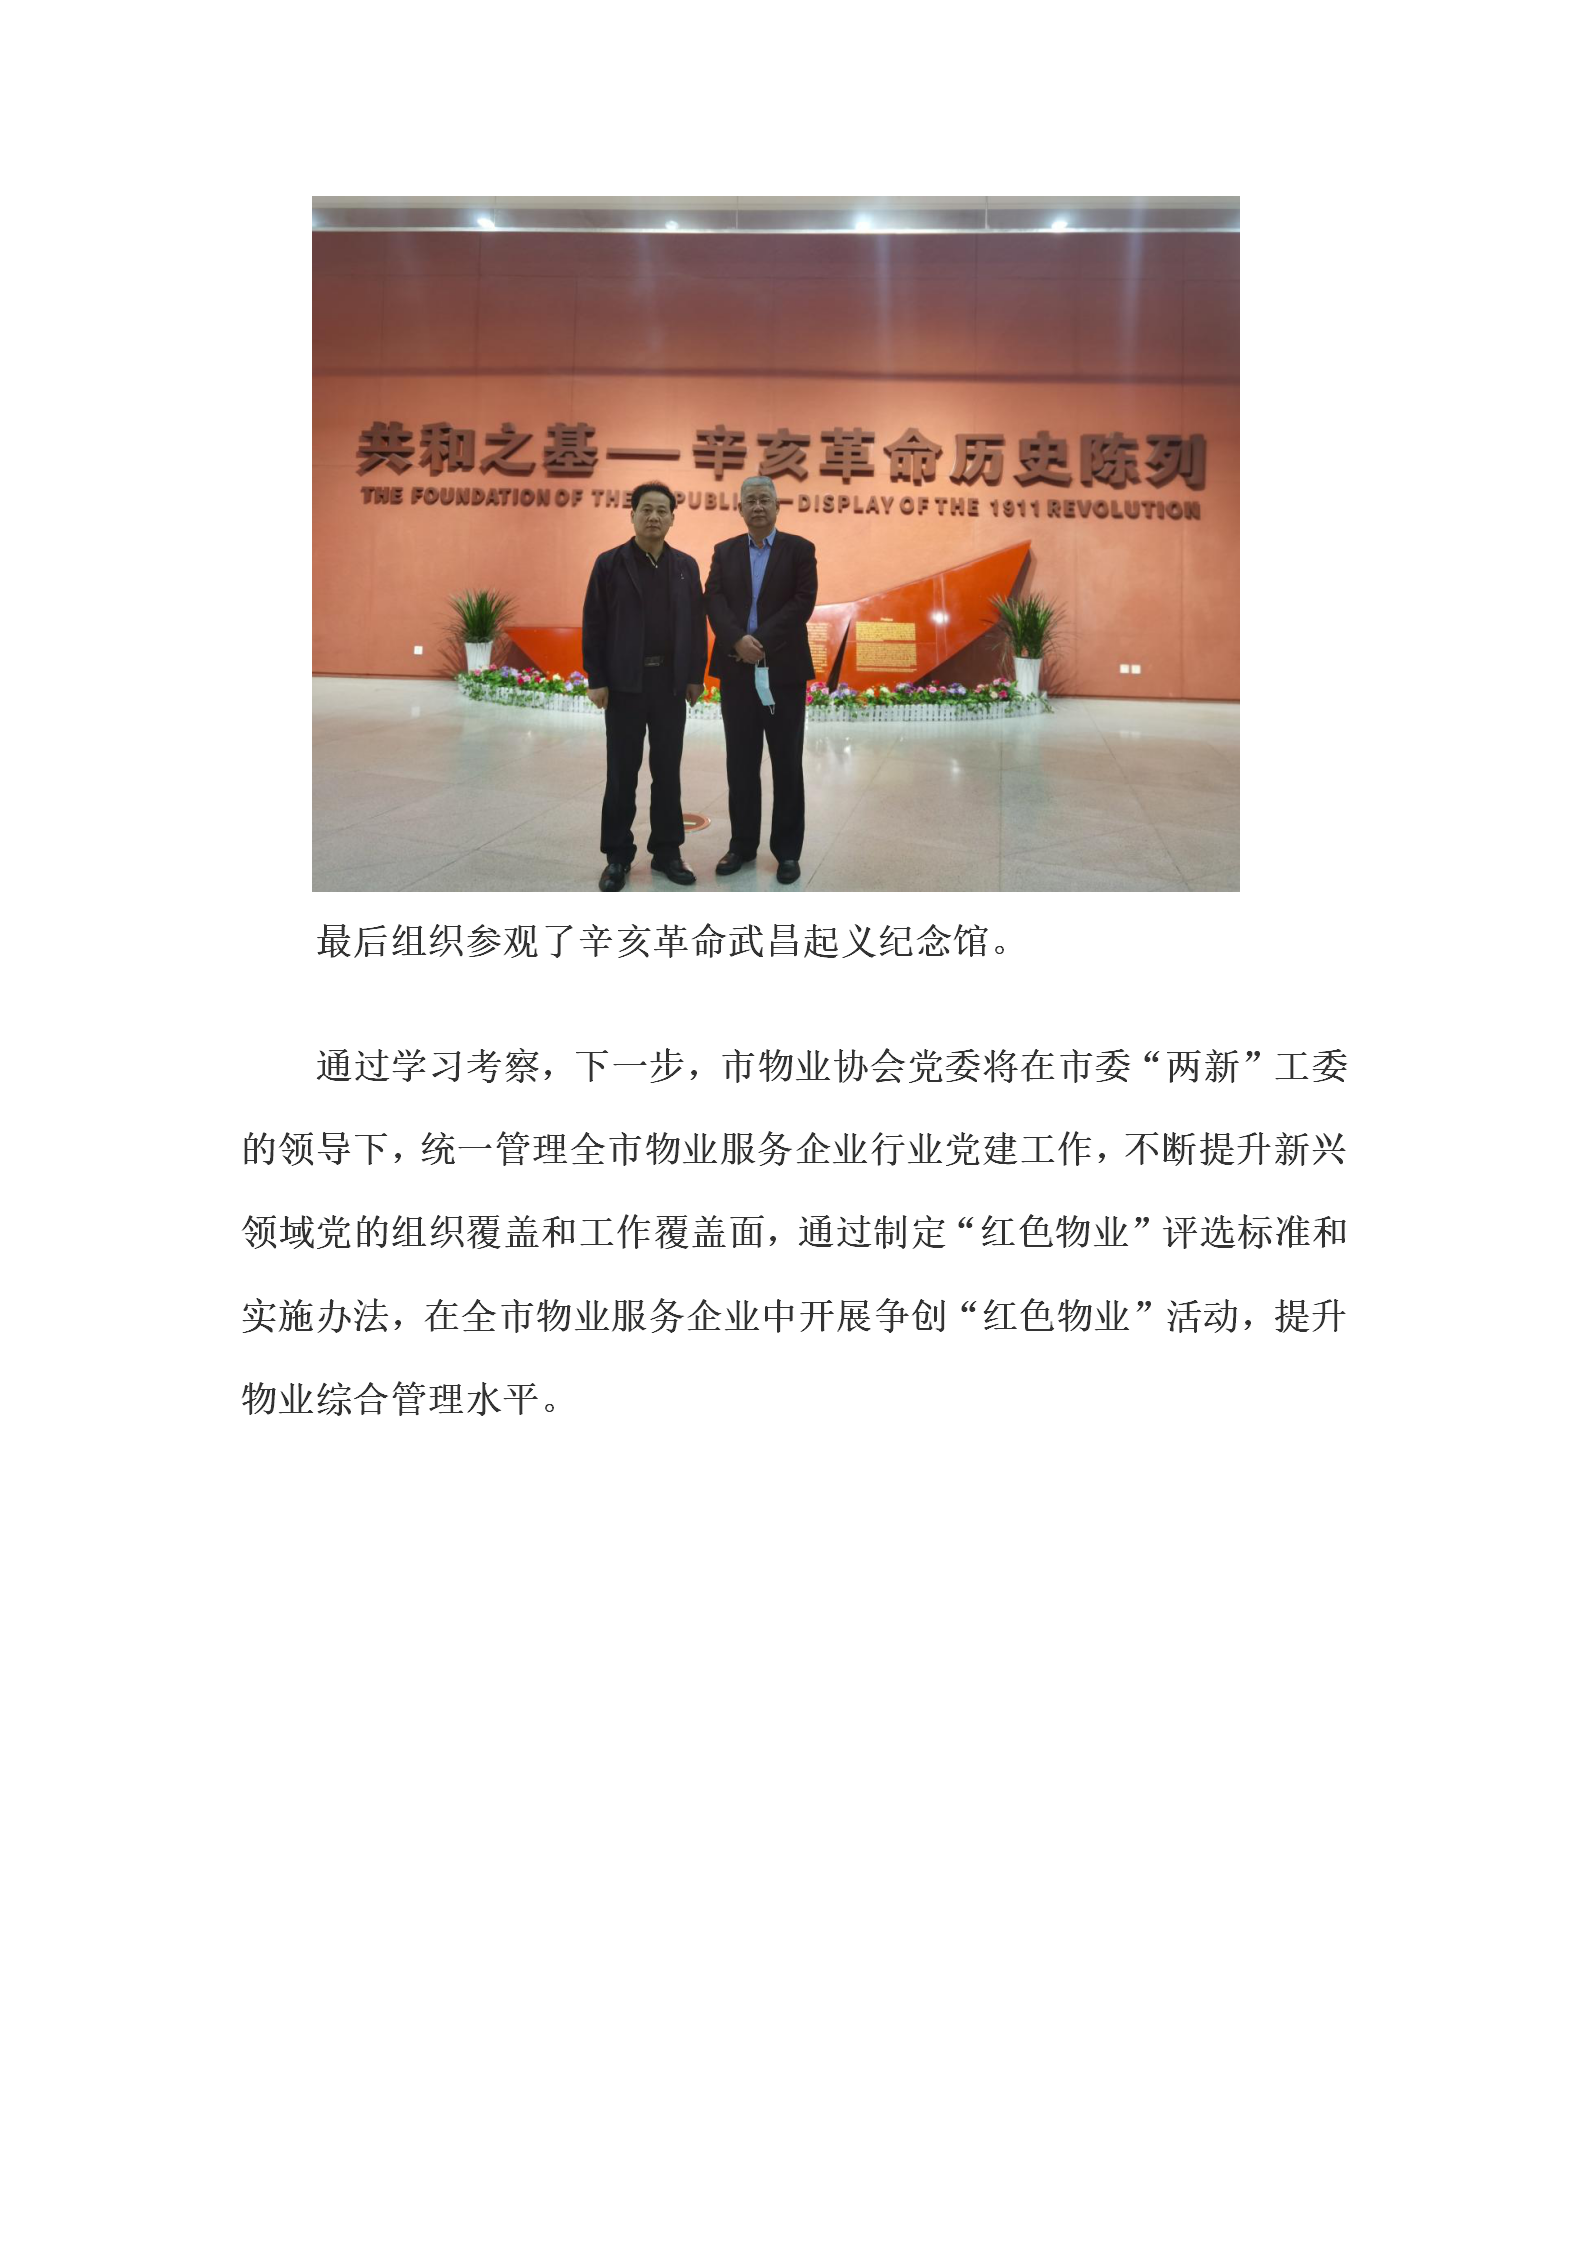 协会党委赴武汉参观学习稿件(2)(1)_05.png